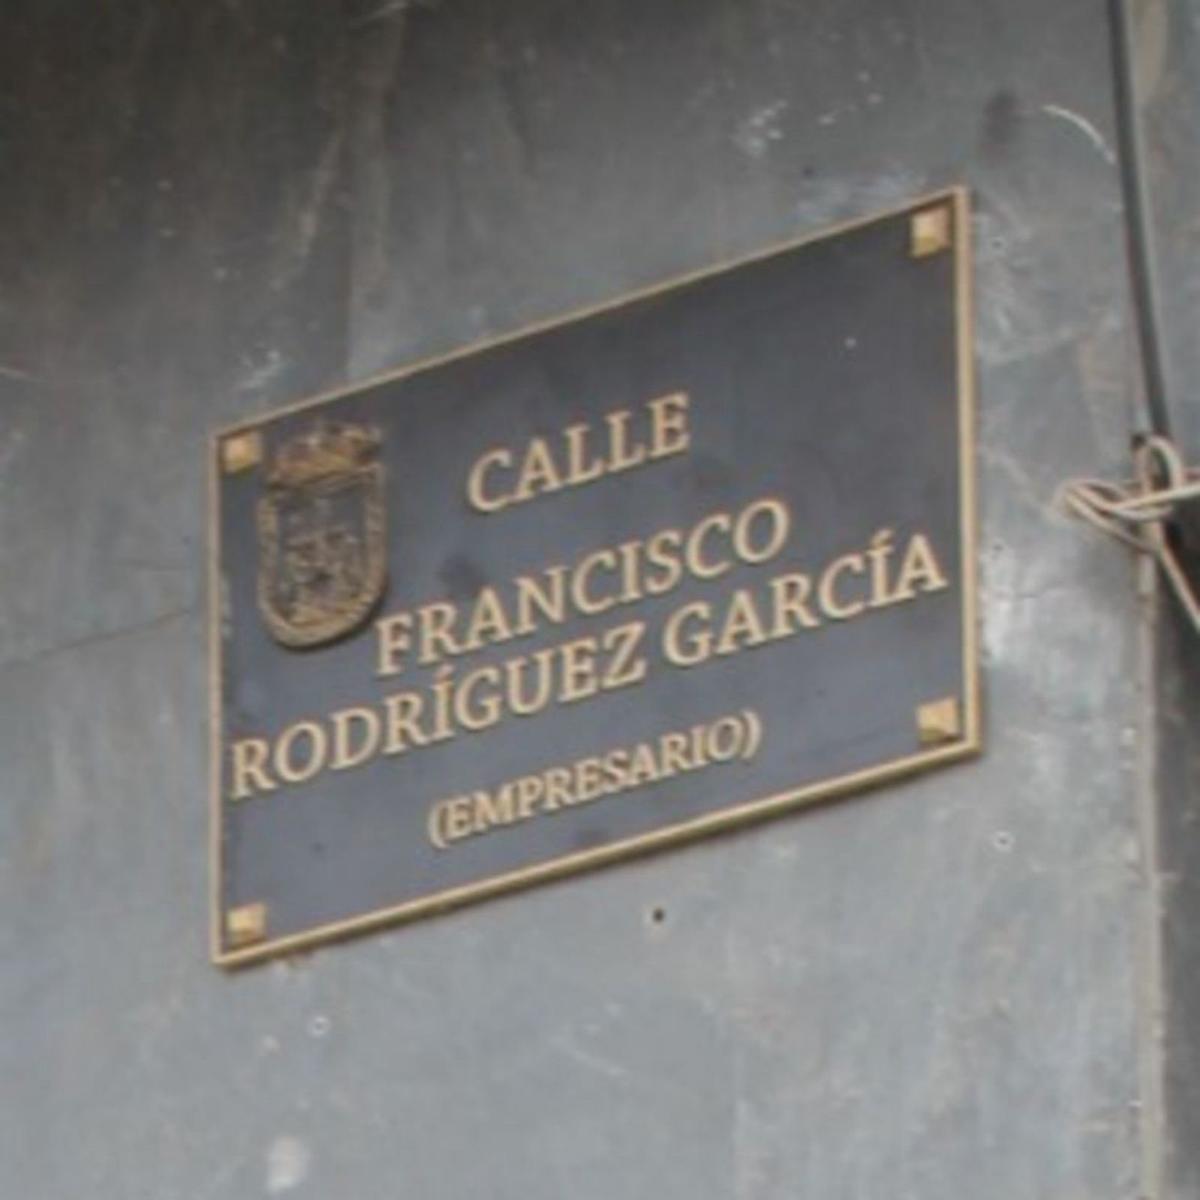 &quot;Es algo muy grande&quot;, dice Francisco Rodríguez al pasear por la calle que le dedica Oviedo